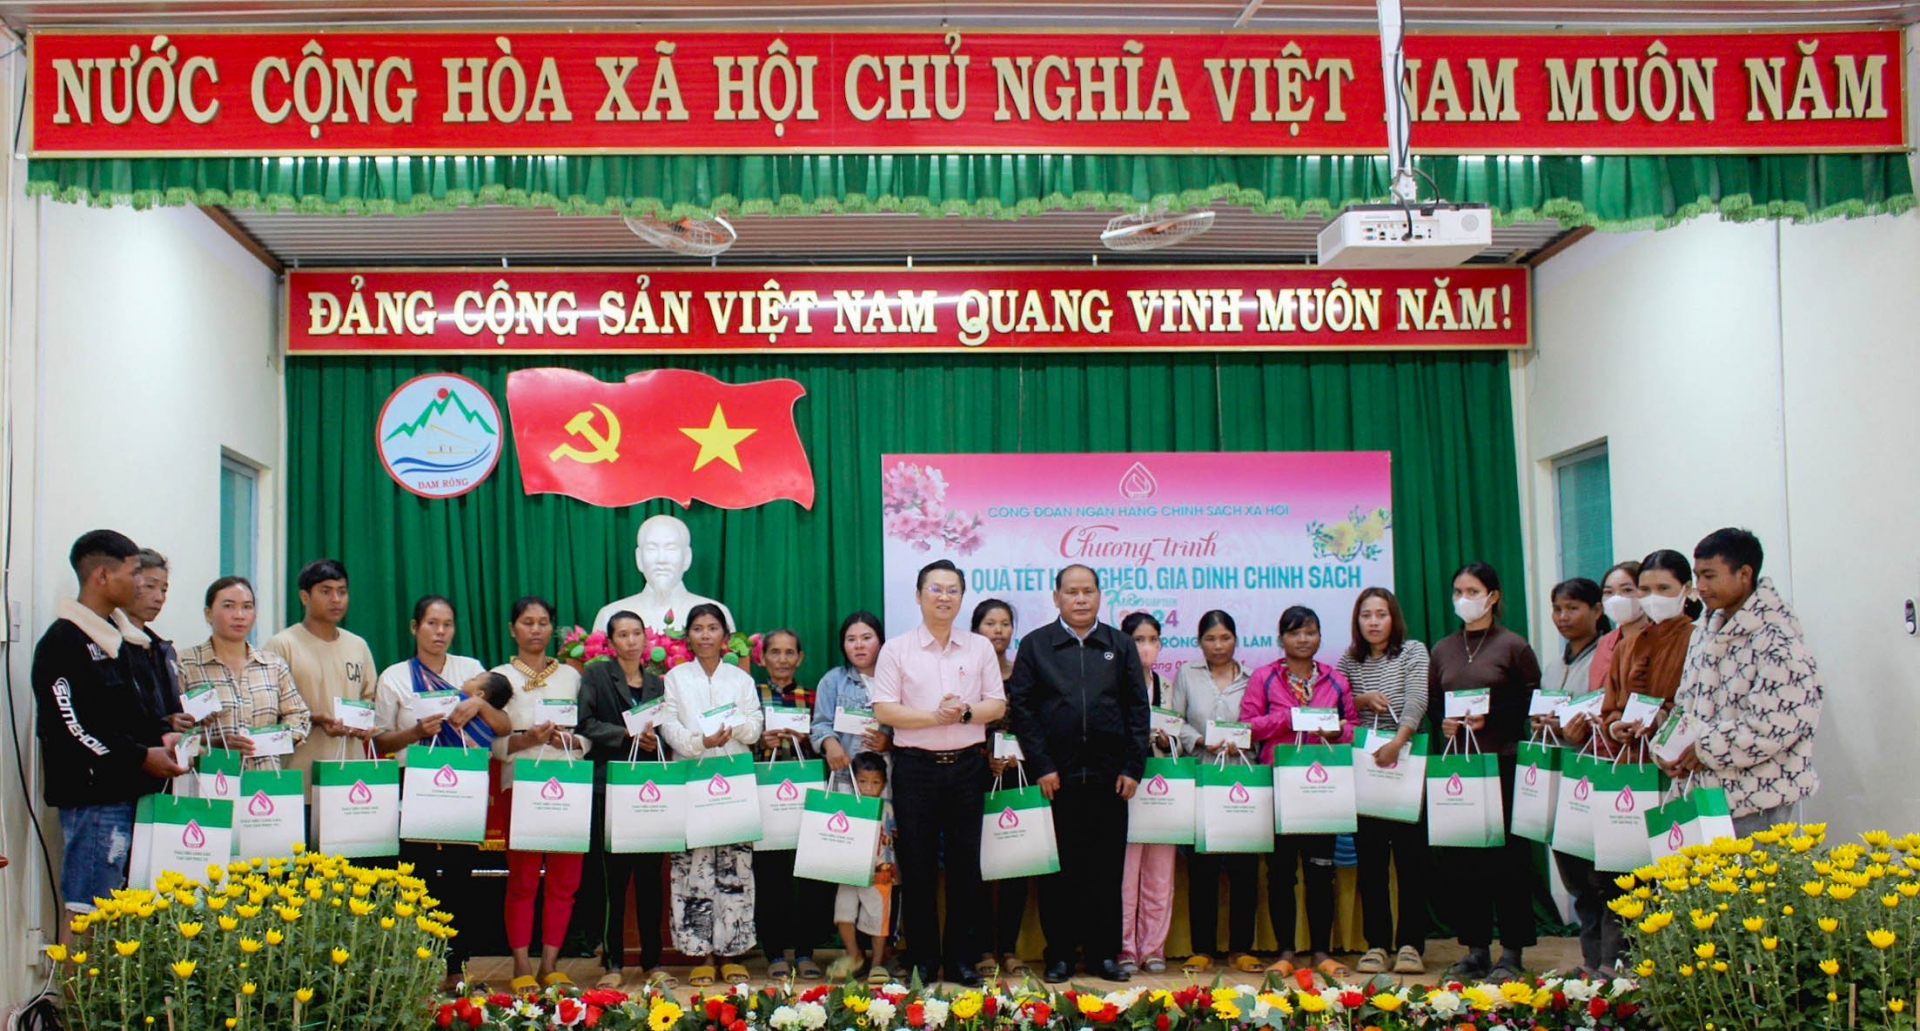 Ông Nguyễn Hữu Quang (áo hồng - giữa) - Phó Giám đốc NHCSXH và ông Liêng Hột Ha Hai - Phó Chủ tịch UBND huyện Đam Rông trao quà Tết cho các hộ gia đình ở huyện Đam Rông